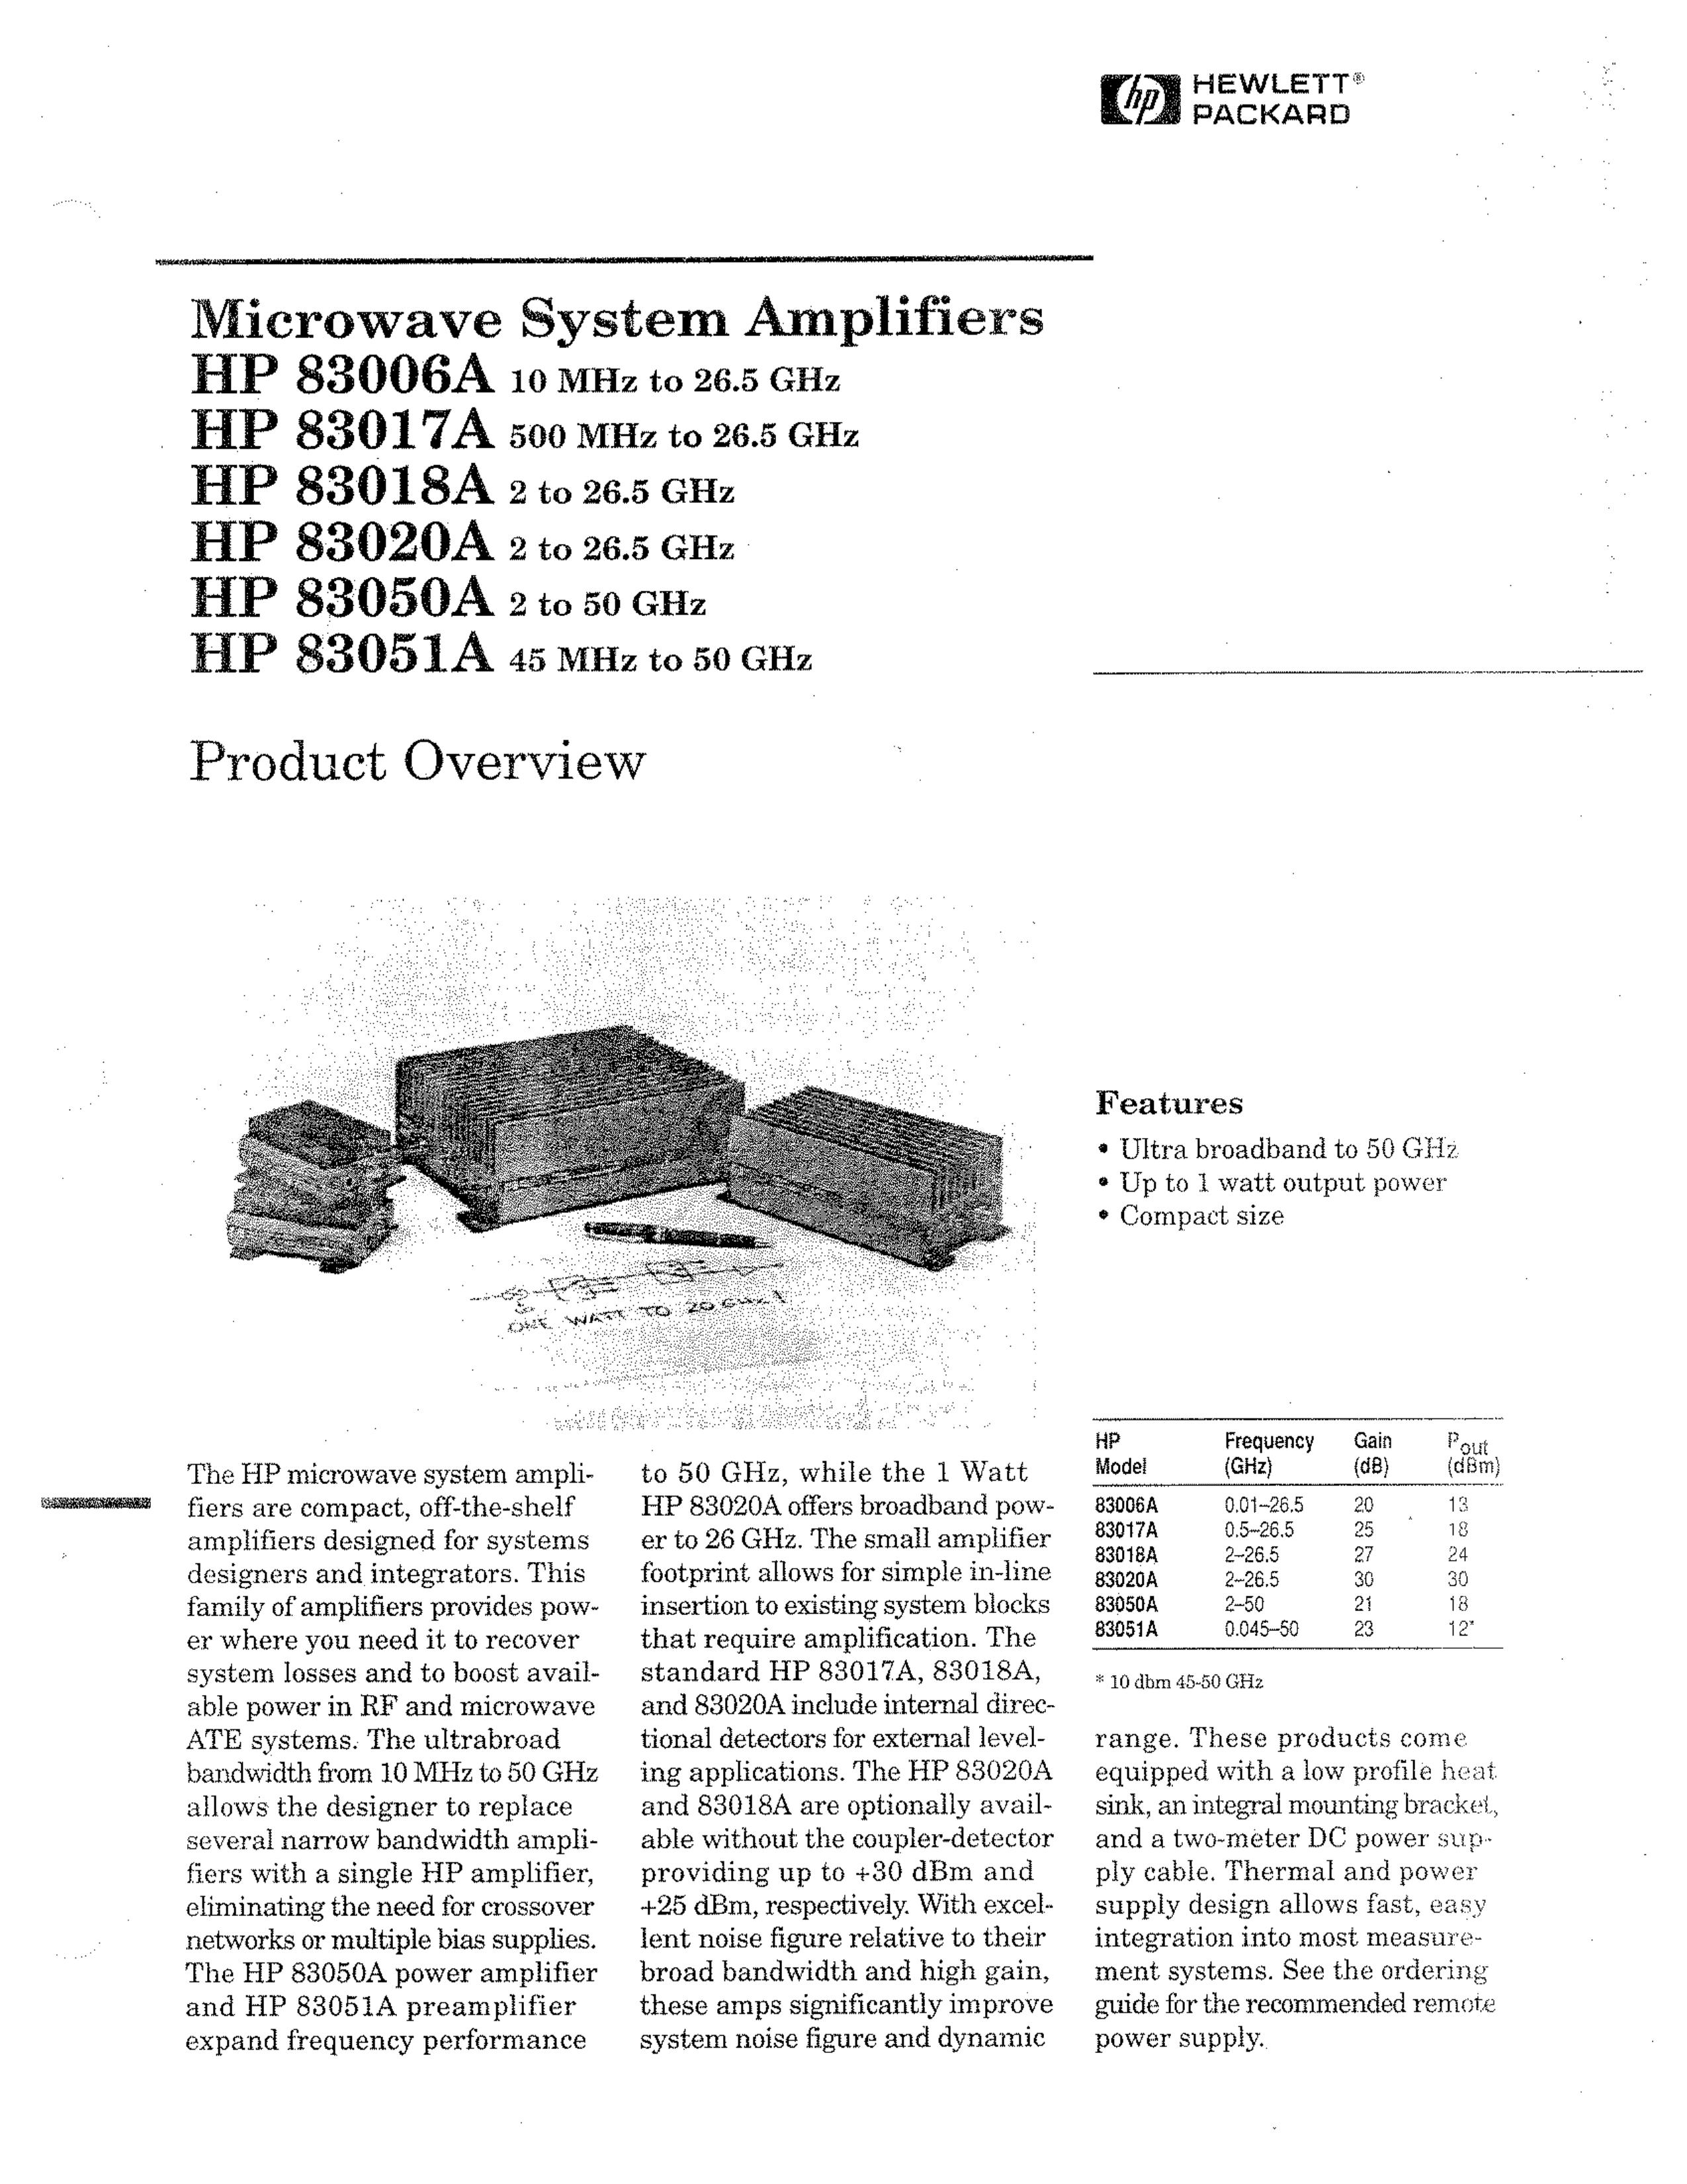 HP (Hewlett-Packard) HP 83050A Ventilation Hood User Manual